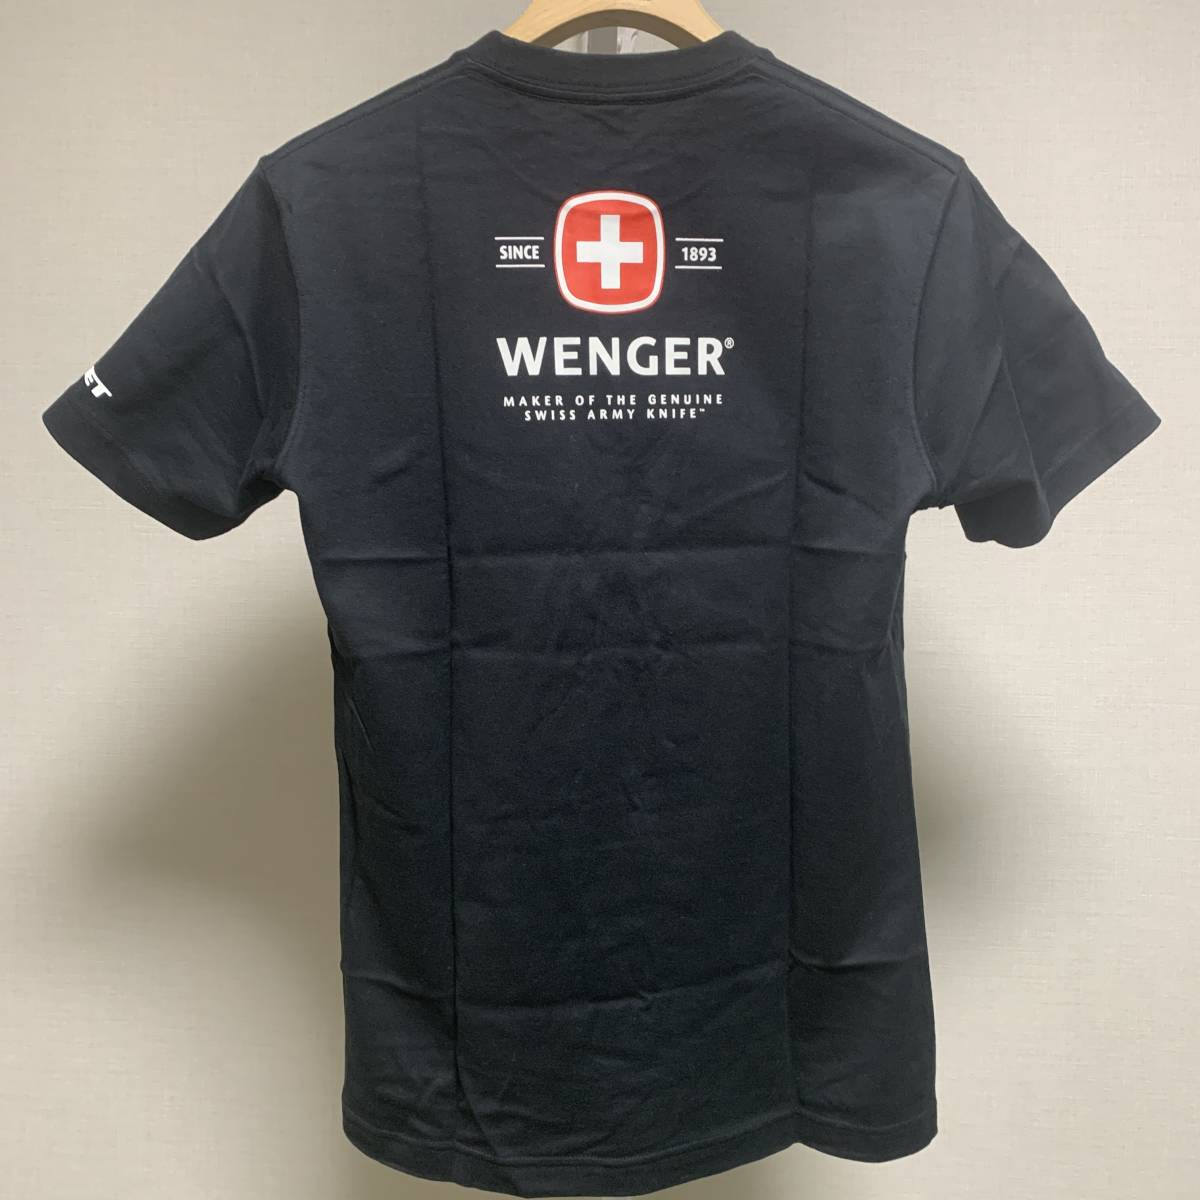 新品未使用 ユニクロ 2008年 企業コラボTシャツ UNIQLO × ウェンガー(Wenger) コラボレーションTシャツ Sサイズ UT アーミーナイフ スイス